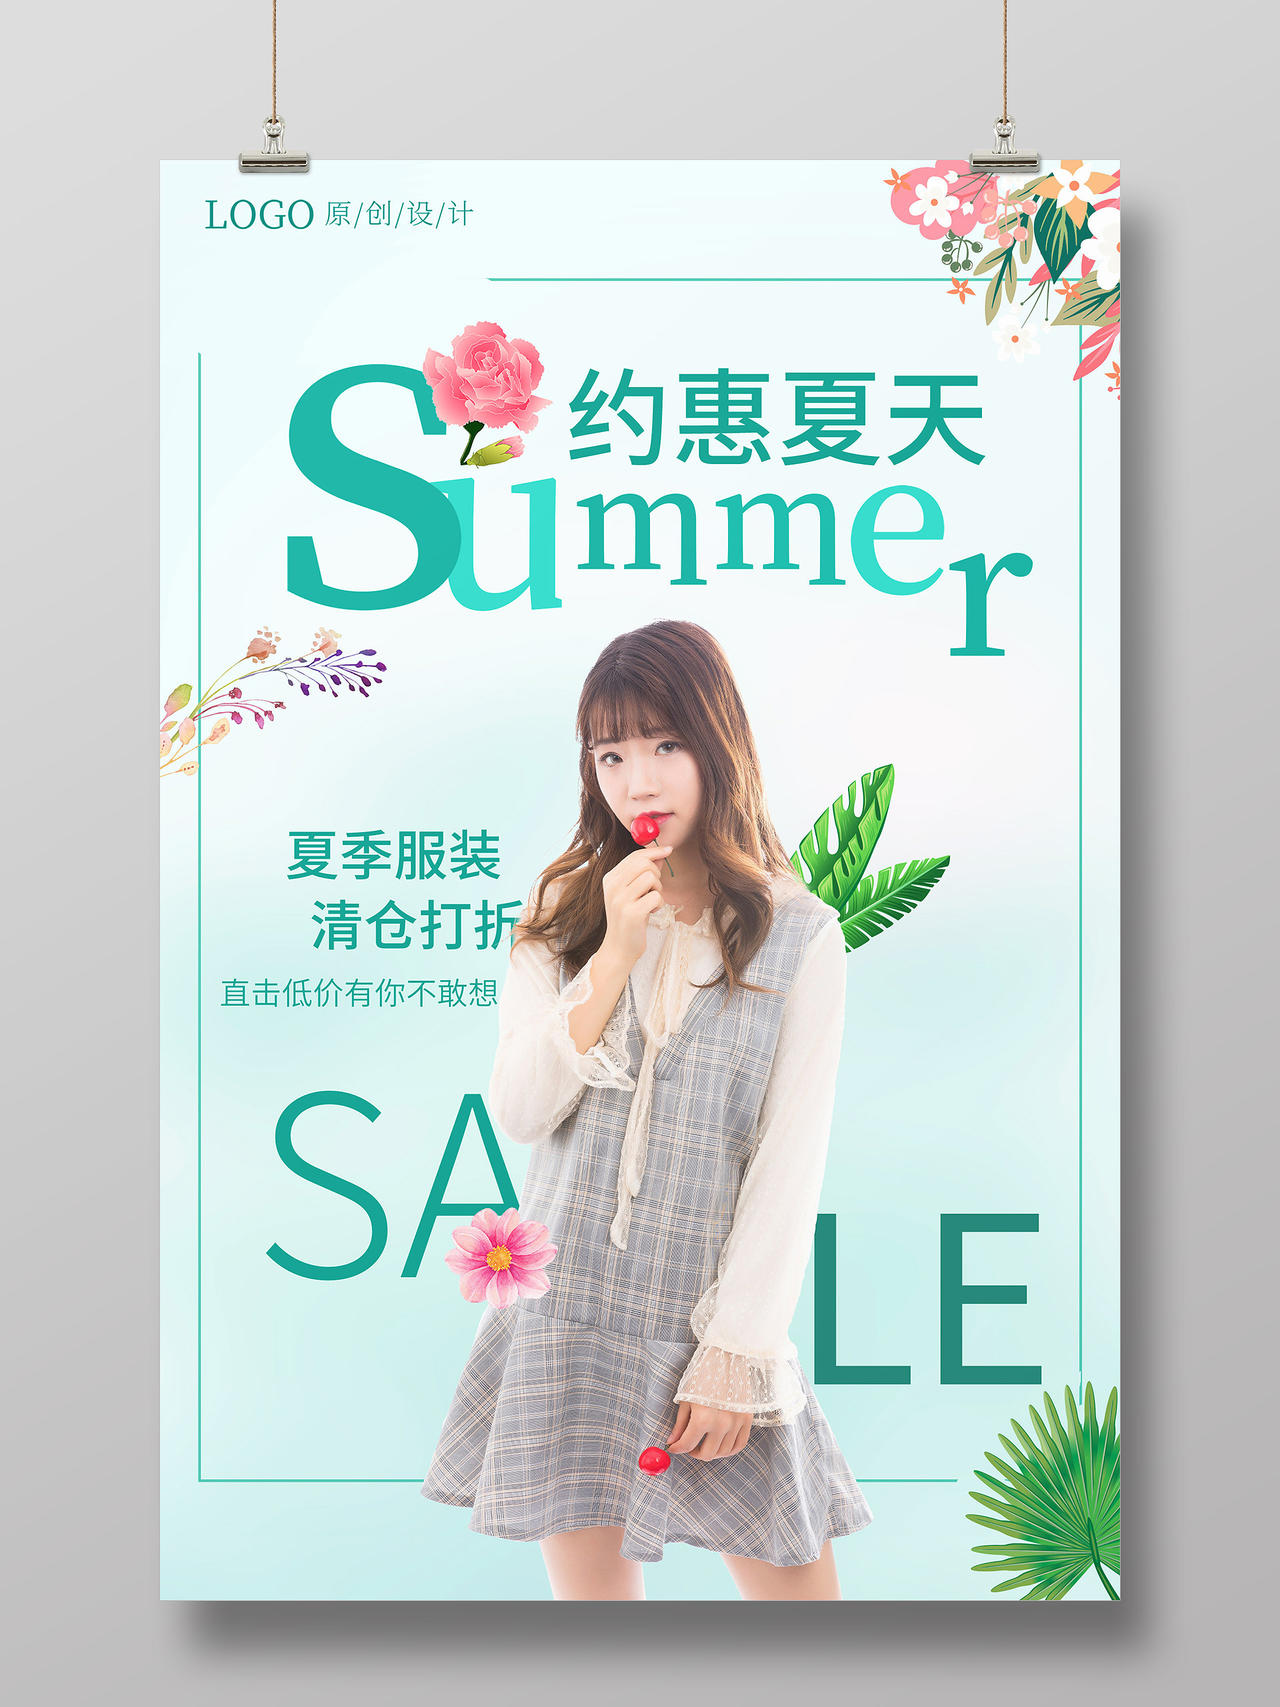 绿色简约清新青春活力夏季夏天夏日女装活动促销海报夏季服装促销